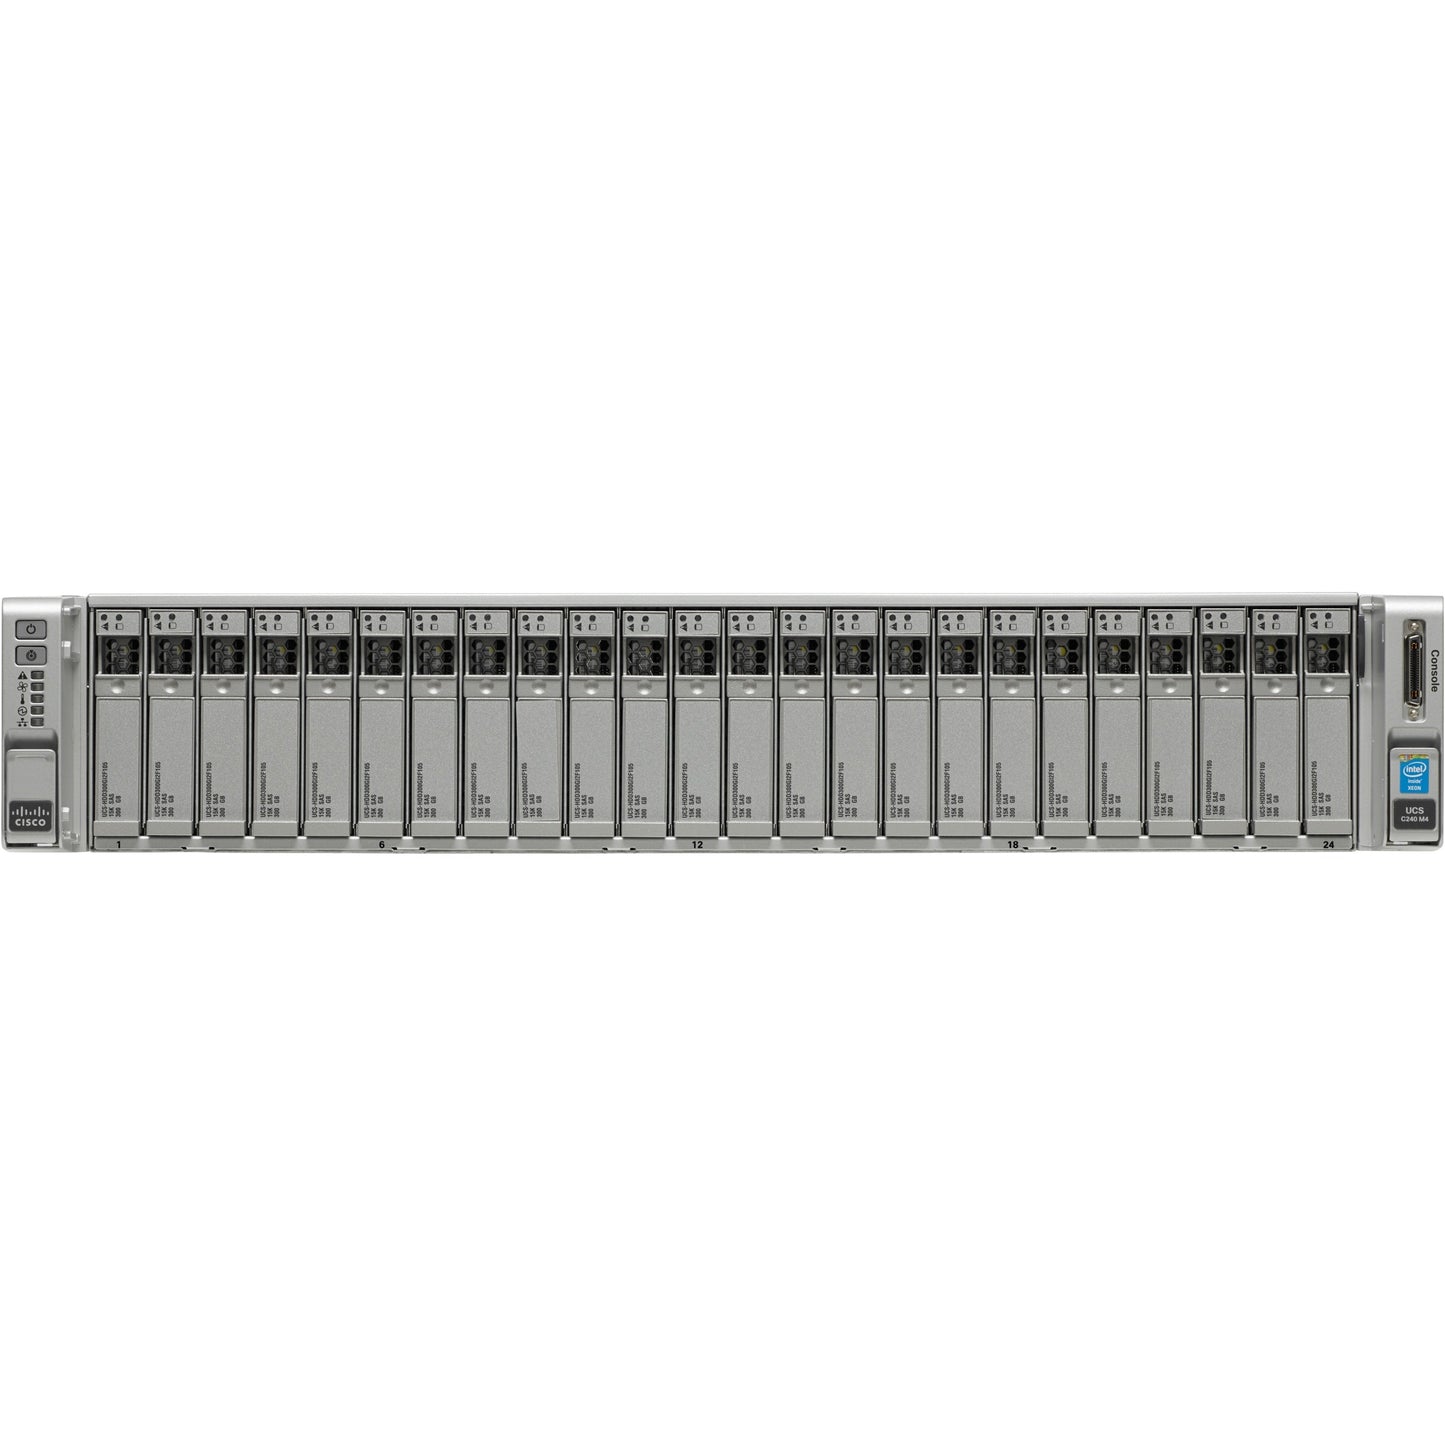 Cisco C240 M4 2U Rack Server - 2 x Intel Xeon E5-2643 v3 3.40 GHz - 256 GB RAM - 12Gb/s SAS Serial ATA Controller